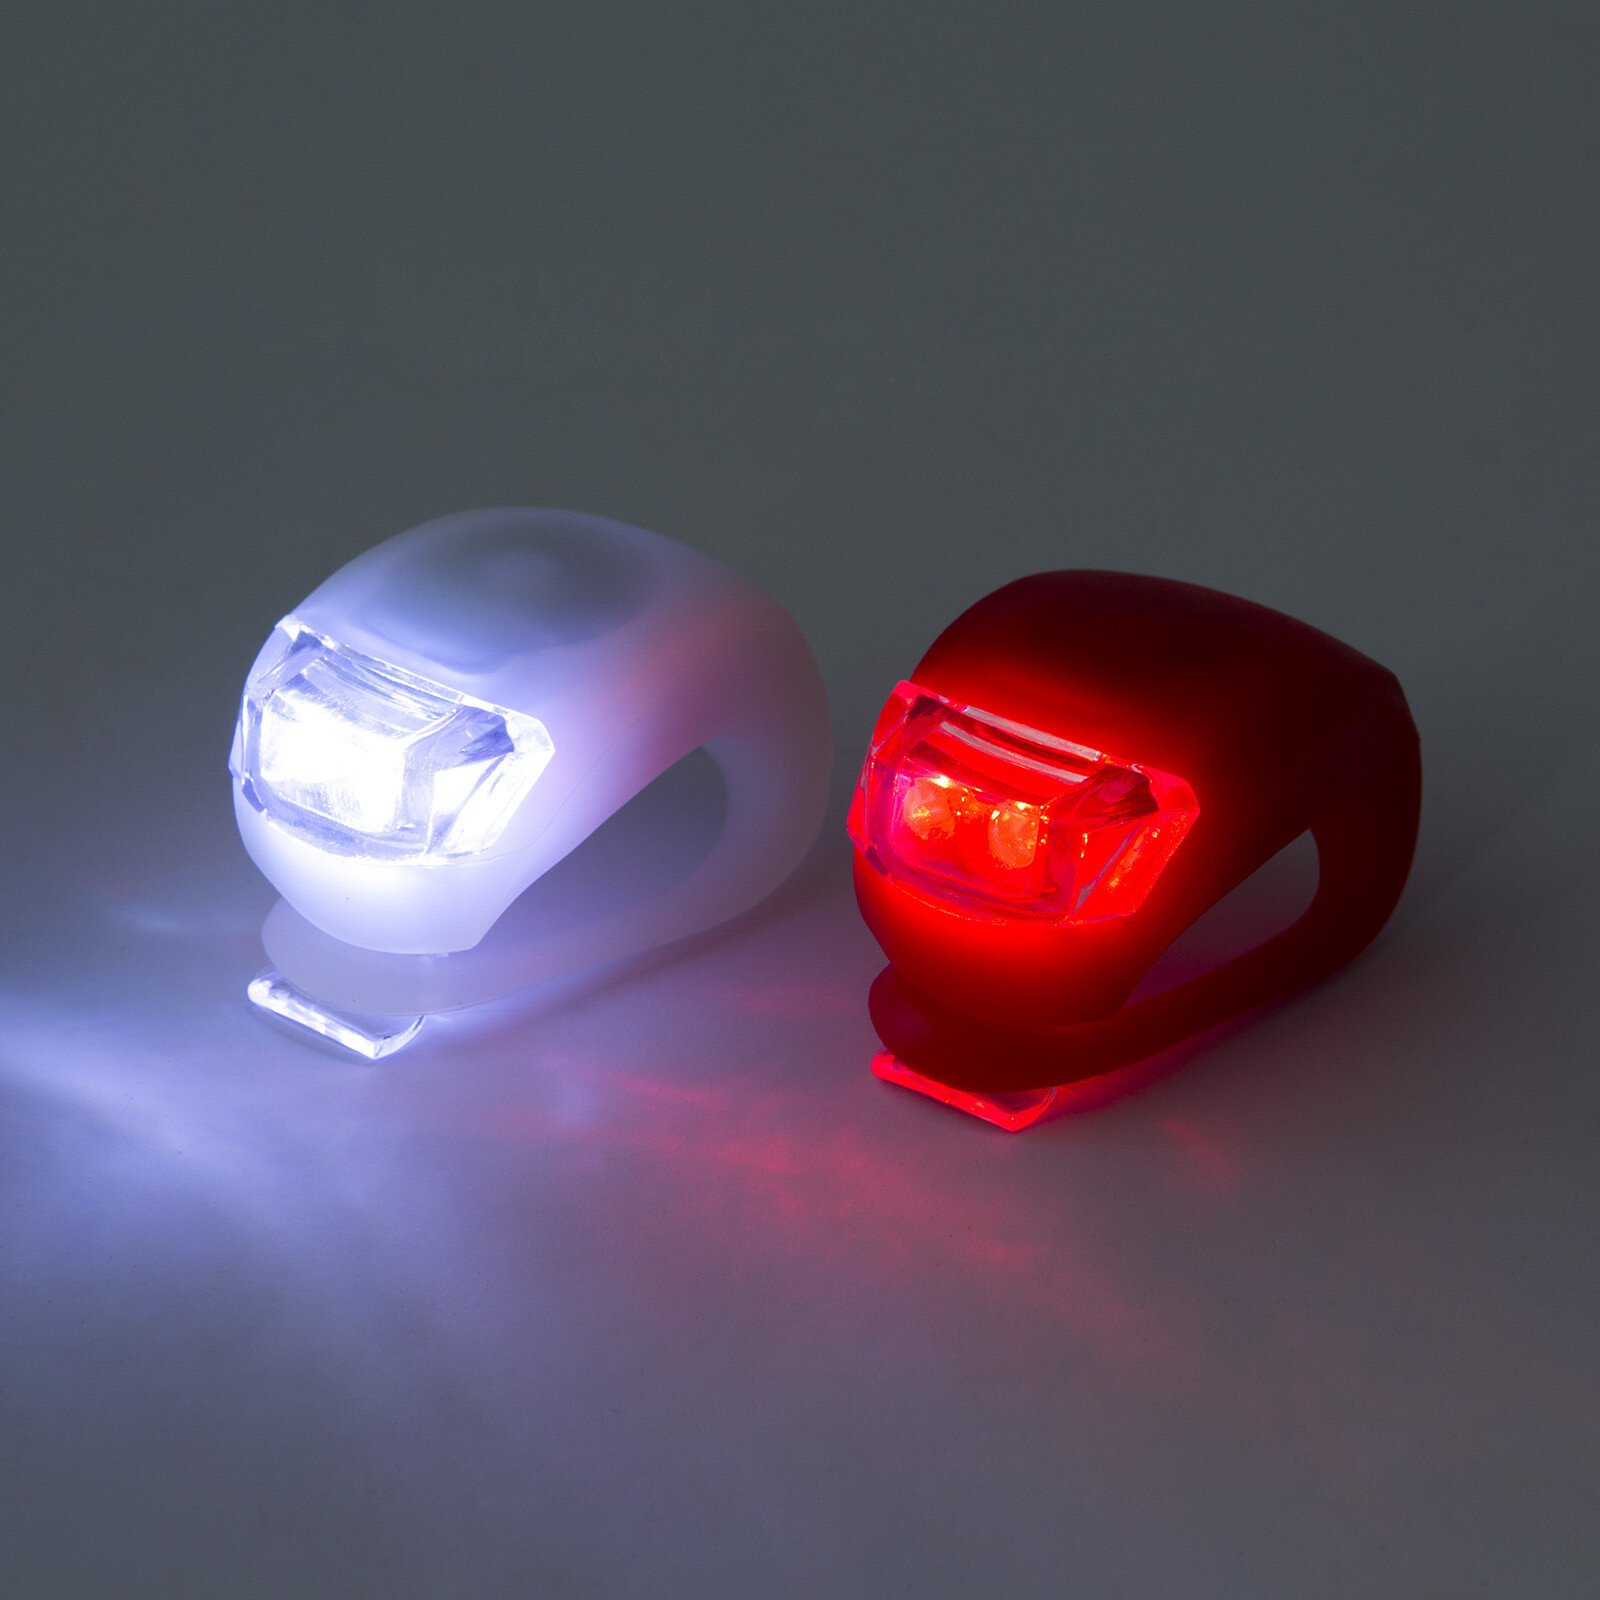 LED-es kerékpár lámpa szett szilikon borítással thumb